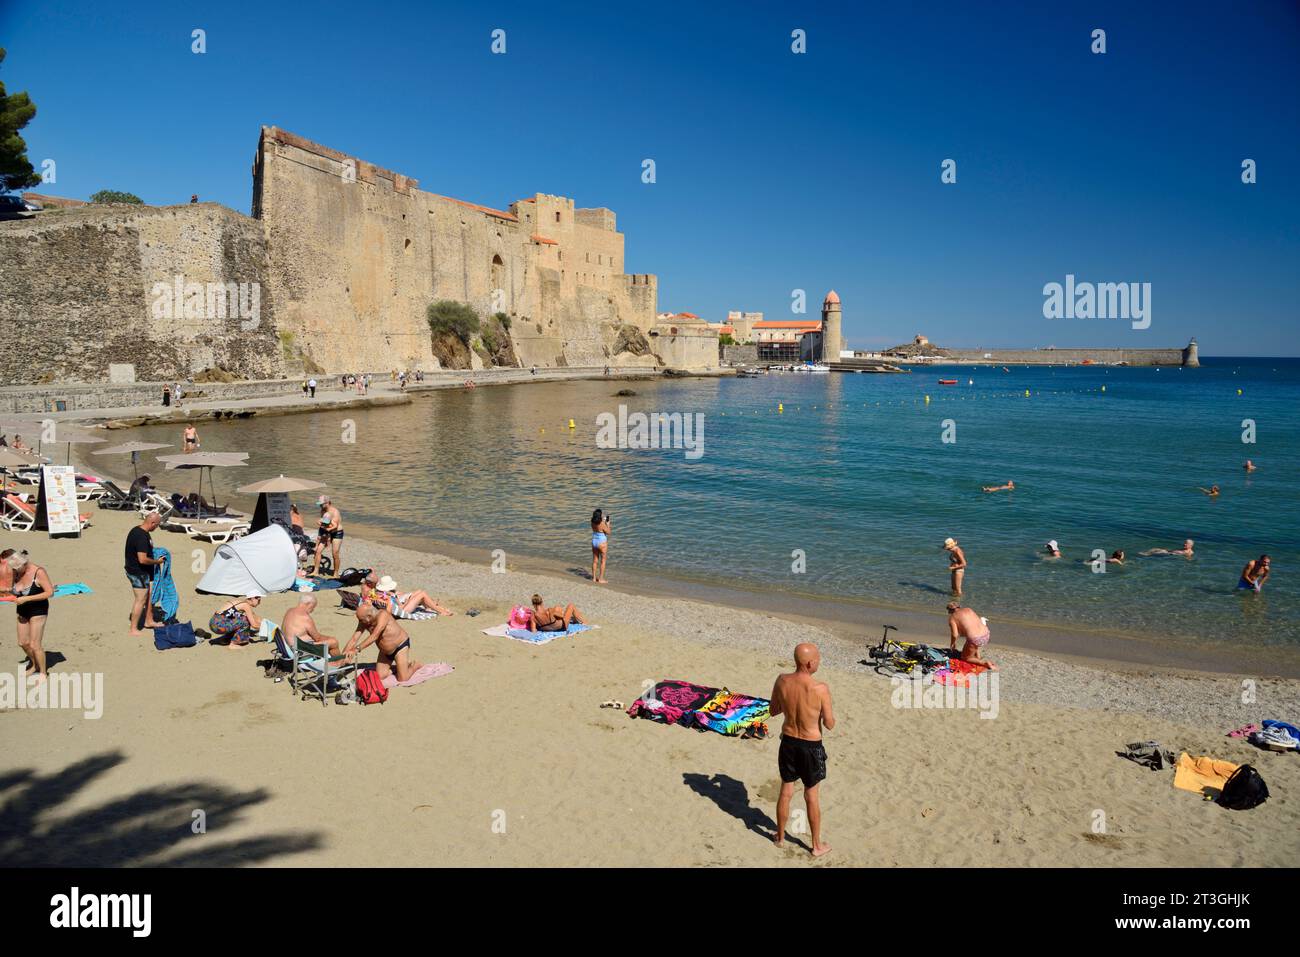 Francia, Pirineos Orientales, Cote Vermeille, Collioure, la playa de Port d'Avall y la muralla defensiva del Castillo Real Foto de stock